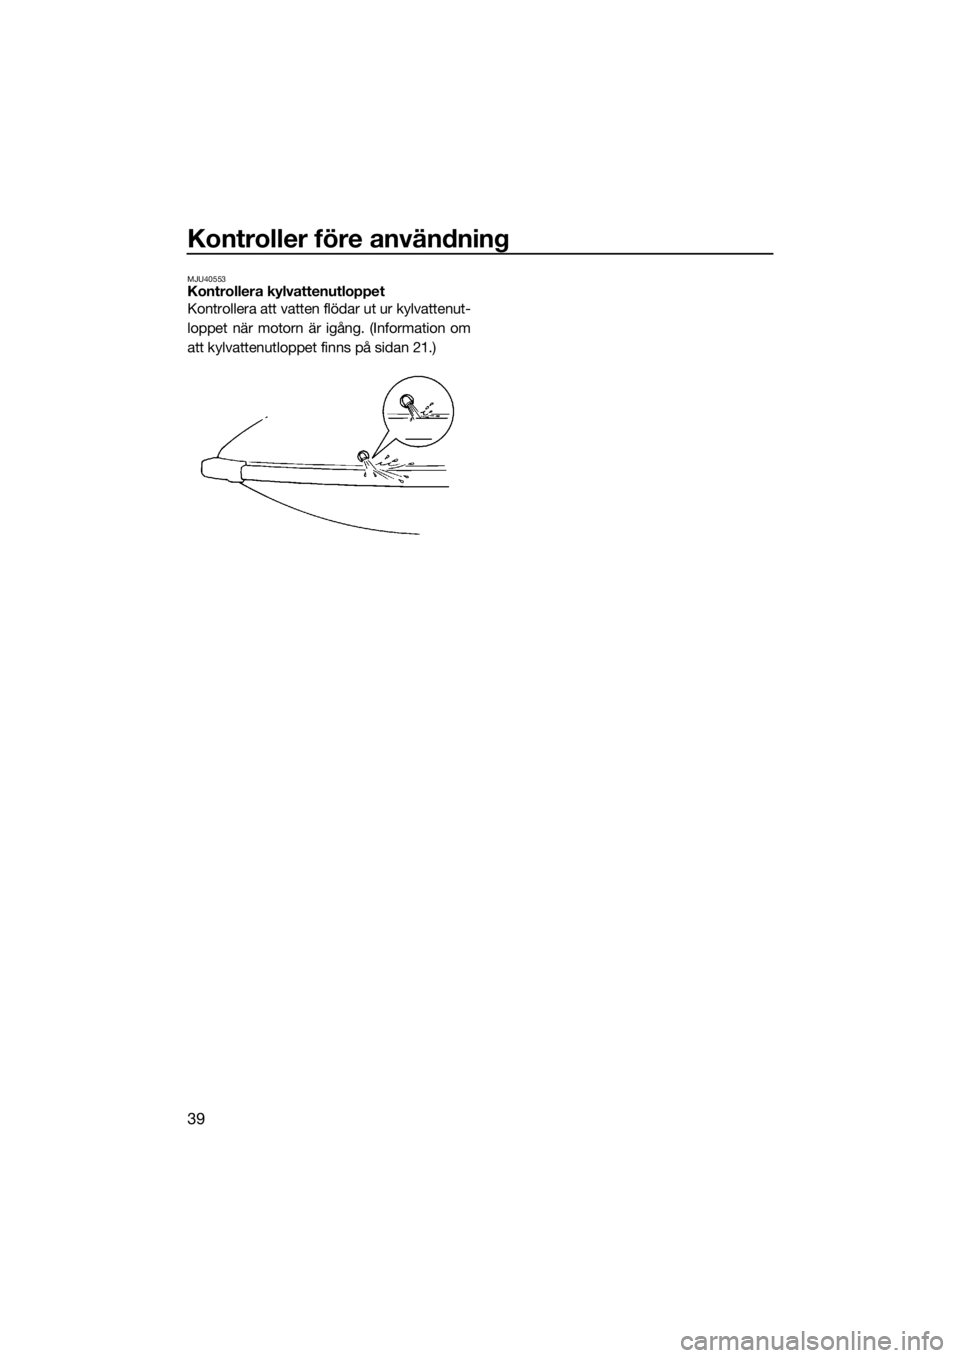 YAMAHA SUPERJET 2019  Bruksanvisningar (in Swedish) Kontroller före användning
39
MJU40553Kontrollera kylvattenutloppet
Kontrollera att vatten flödar ut ur kylvattenut-
loppet när motorn är igång. (Information om
att kylvattenutloppet finns på s